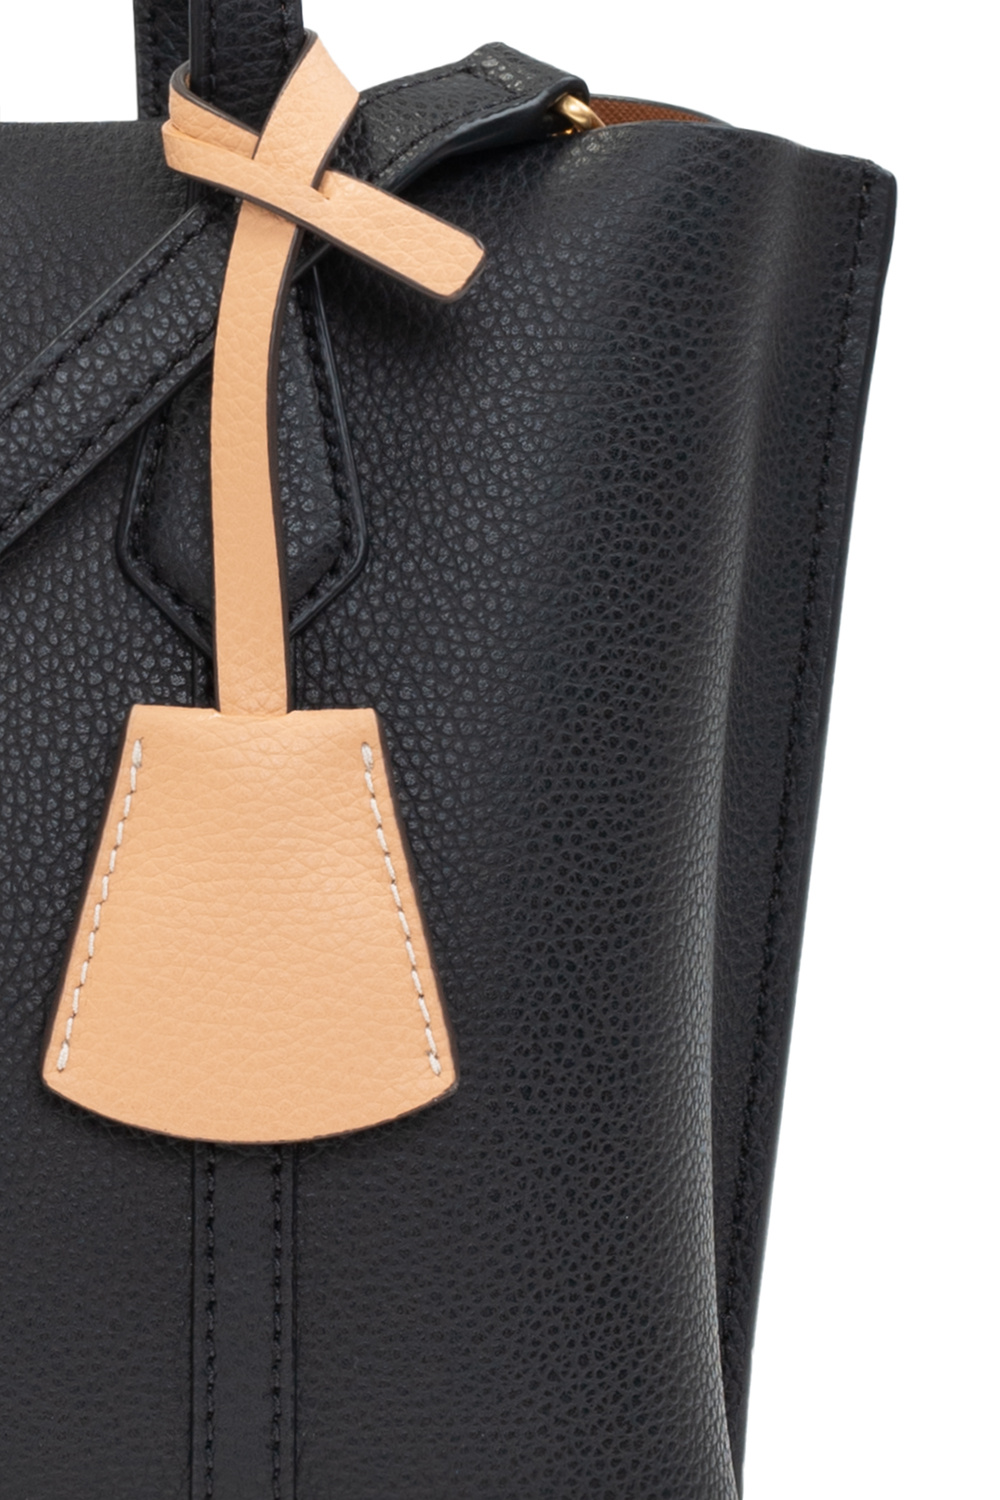 IetpShops, Louis Vuitton Monogram Pochette Bosphore Shoulder Bag M40044, Women's Bags